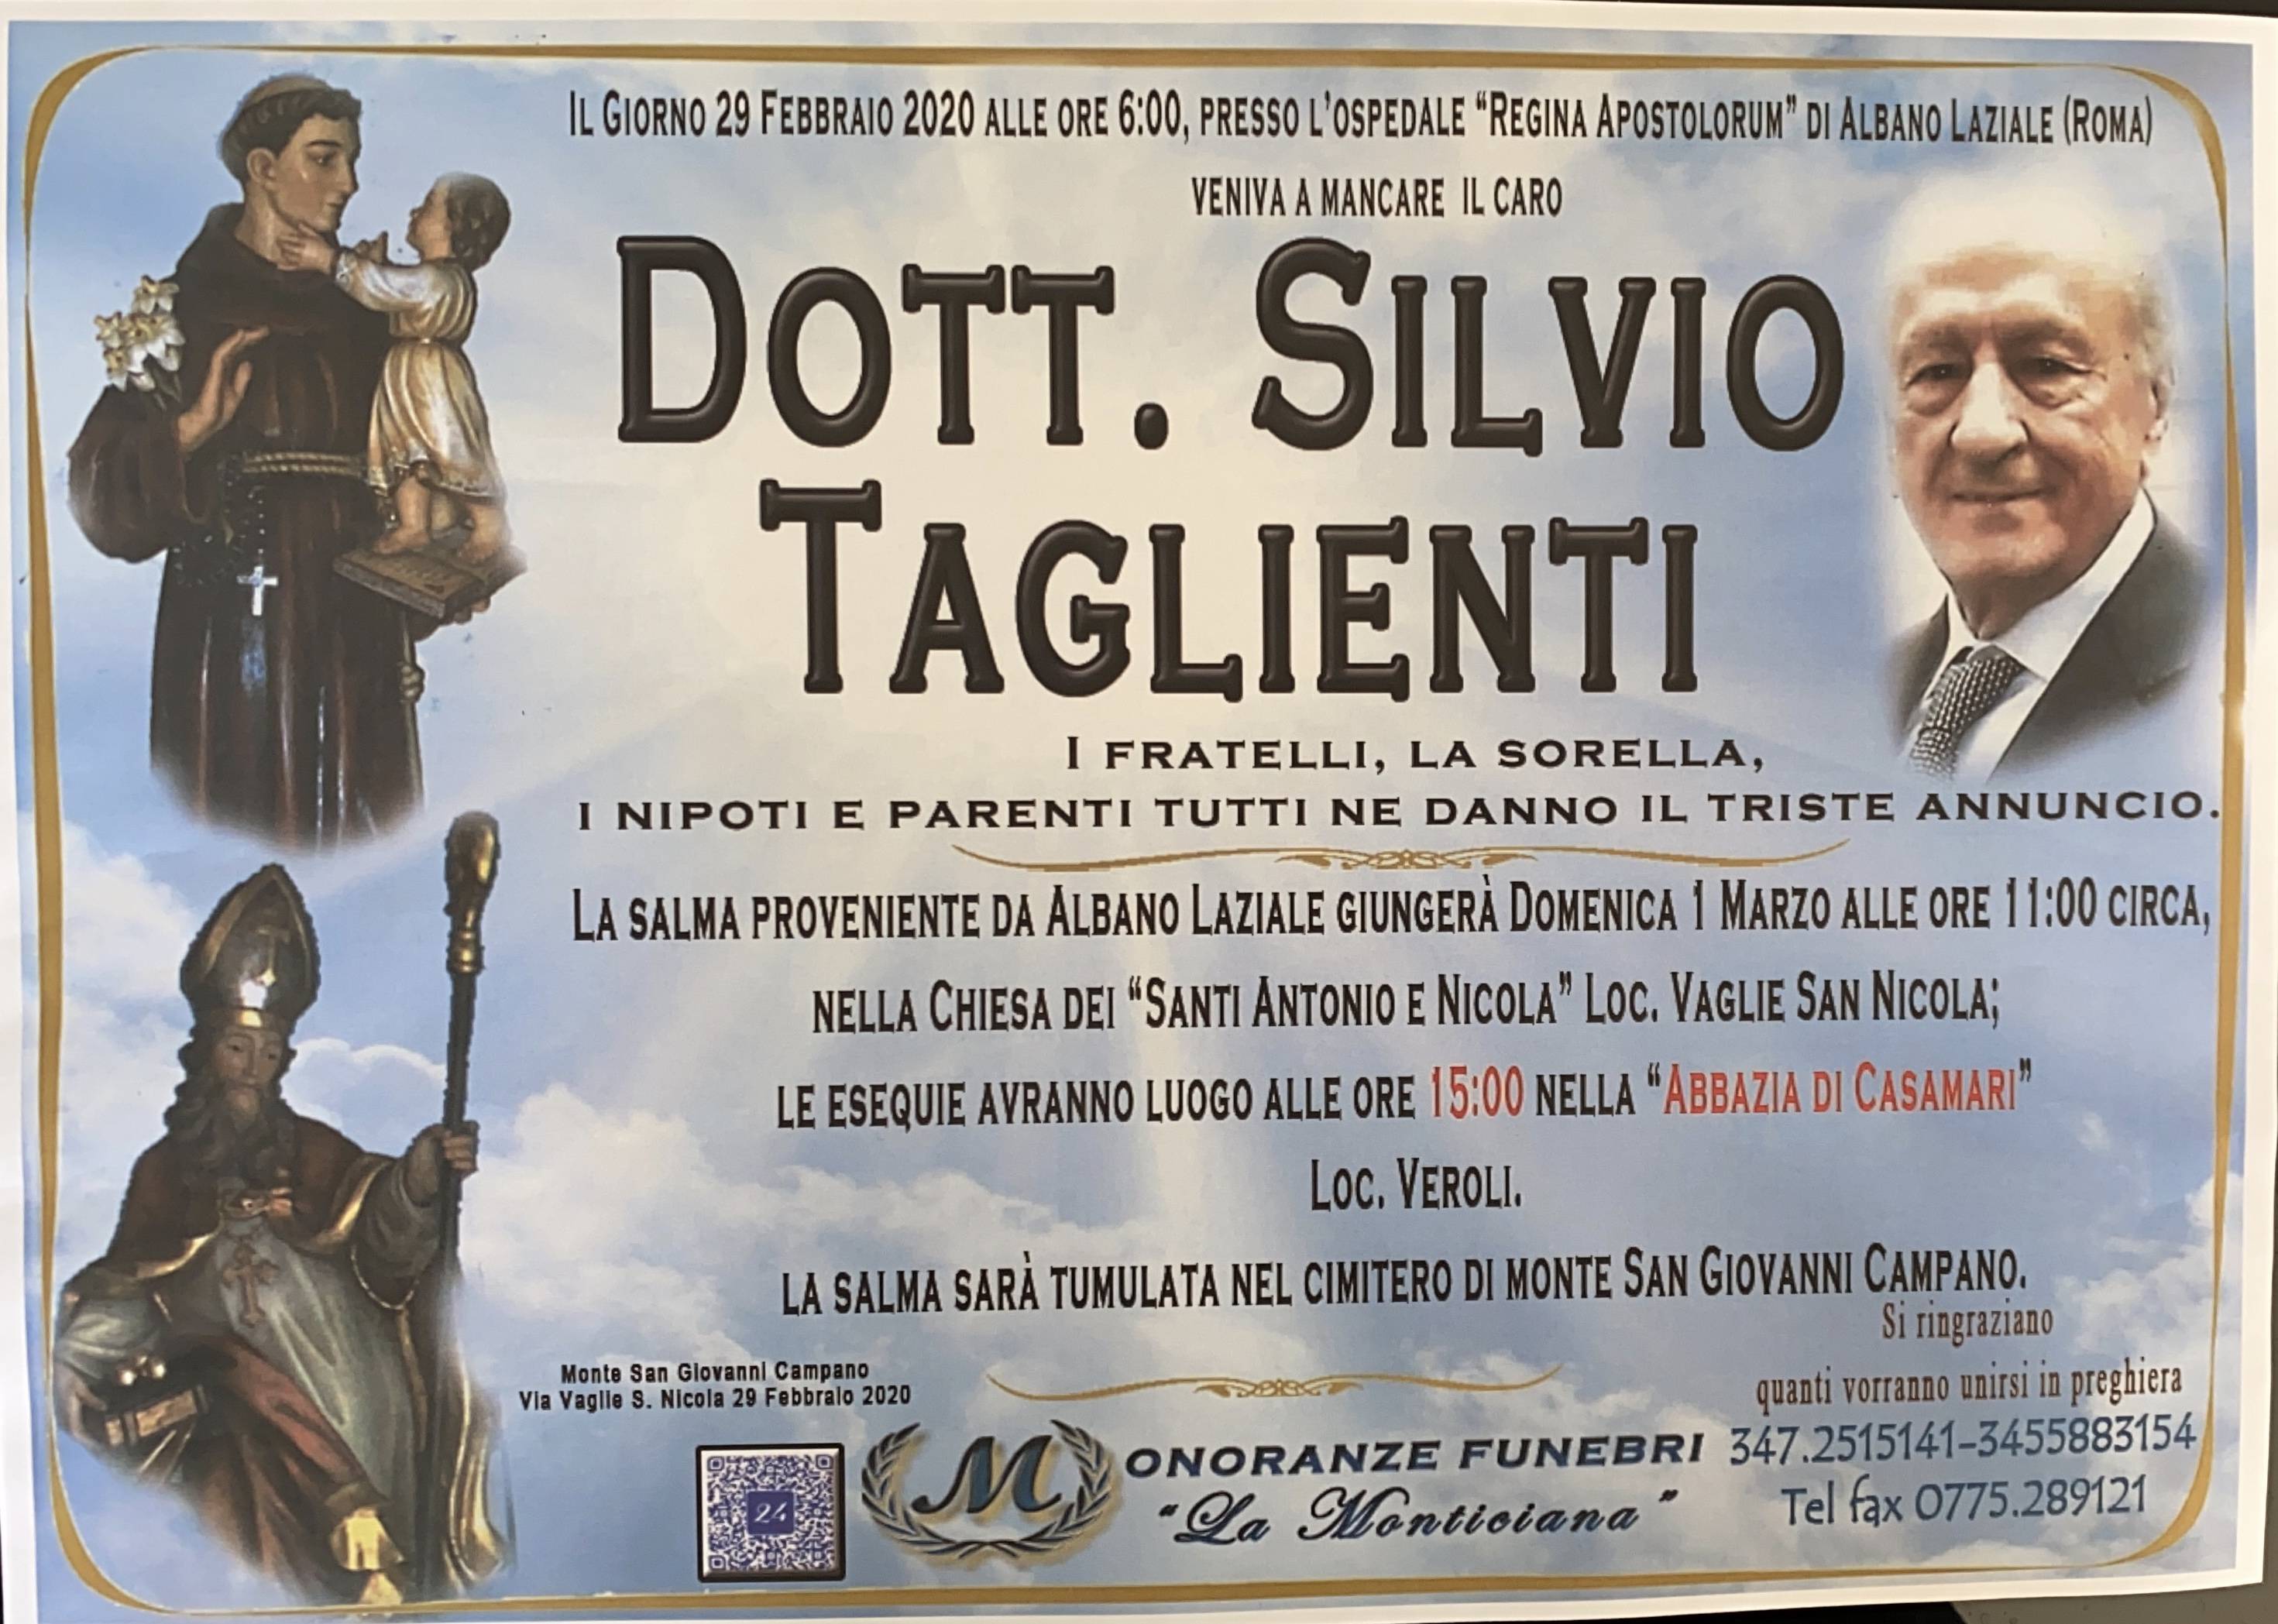 Silvio Taglienti